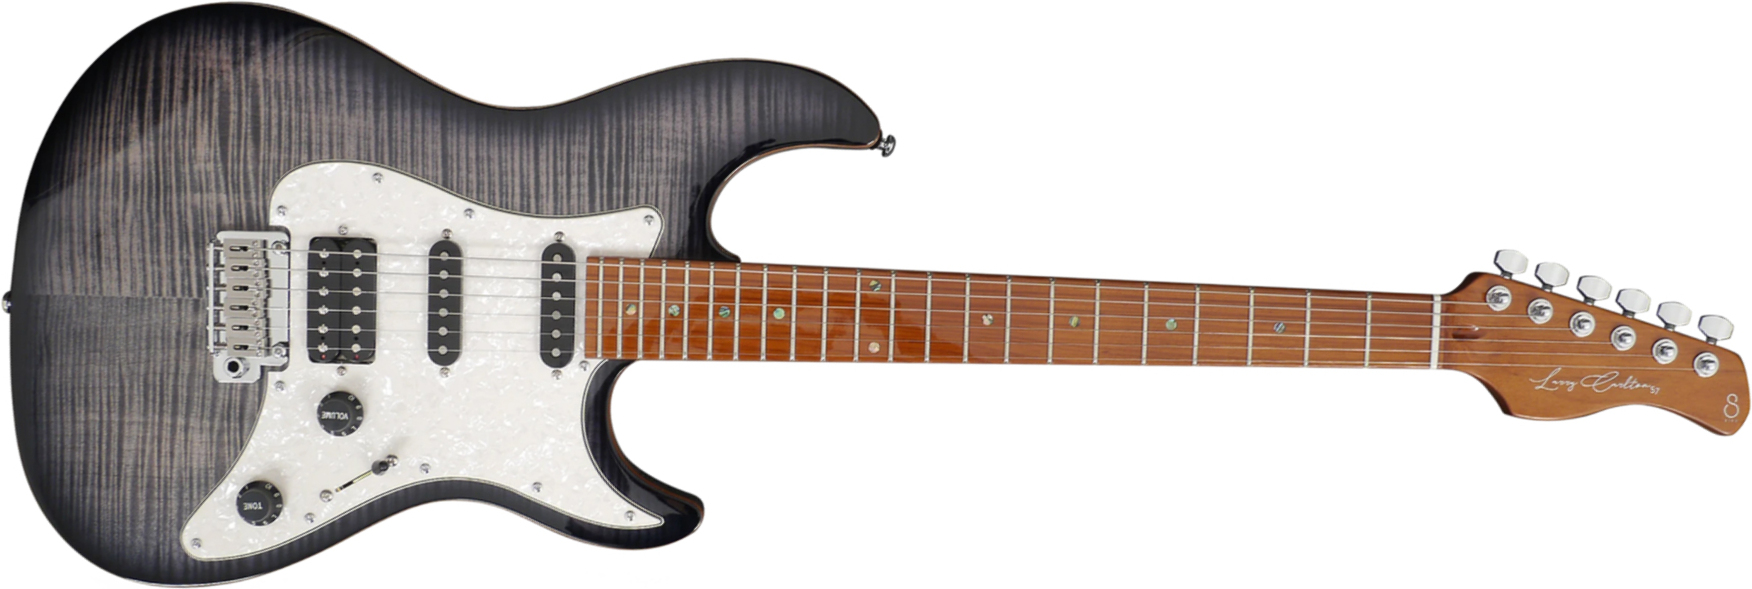 Sire Larry Carlton S7 Fm Signature Hss Trem Mn - Trans Black - Guitarra eléctrica con forma de str. - Main picture